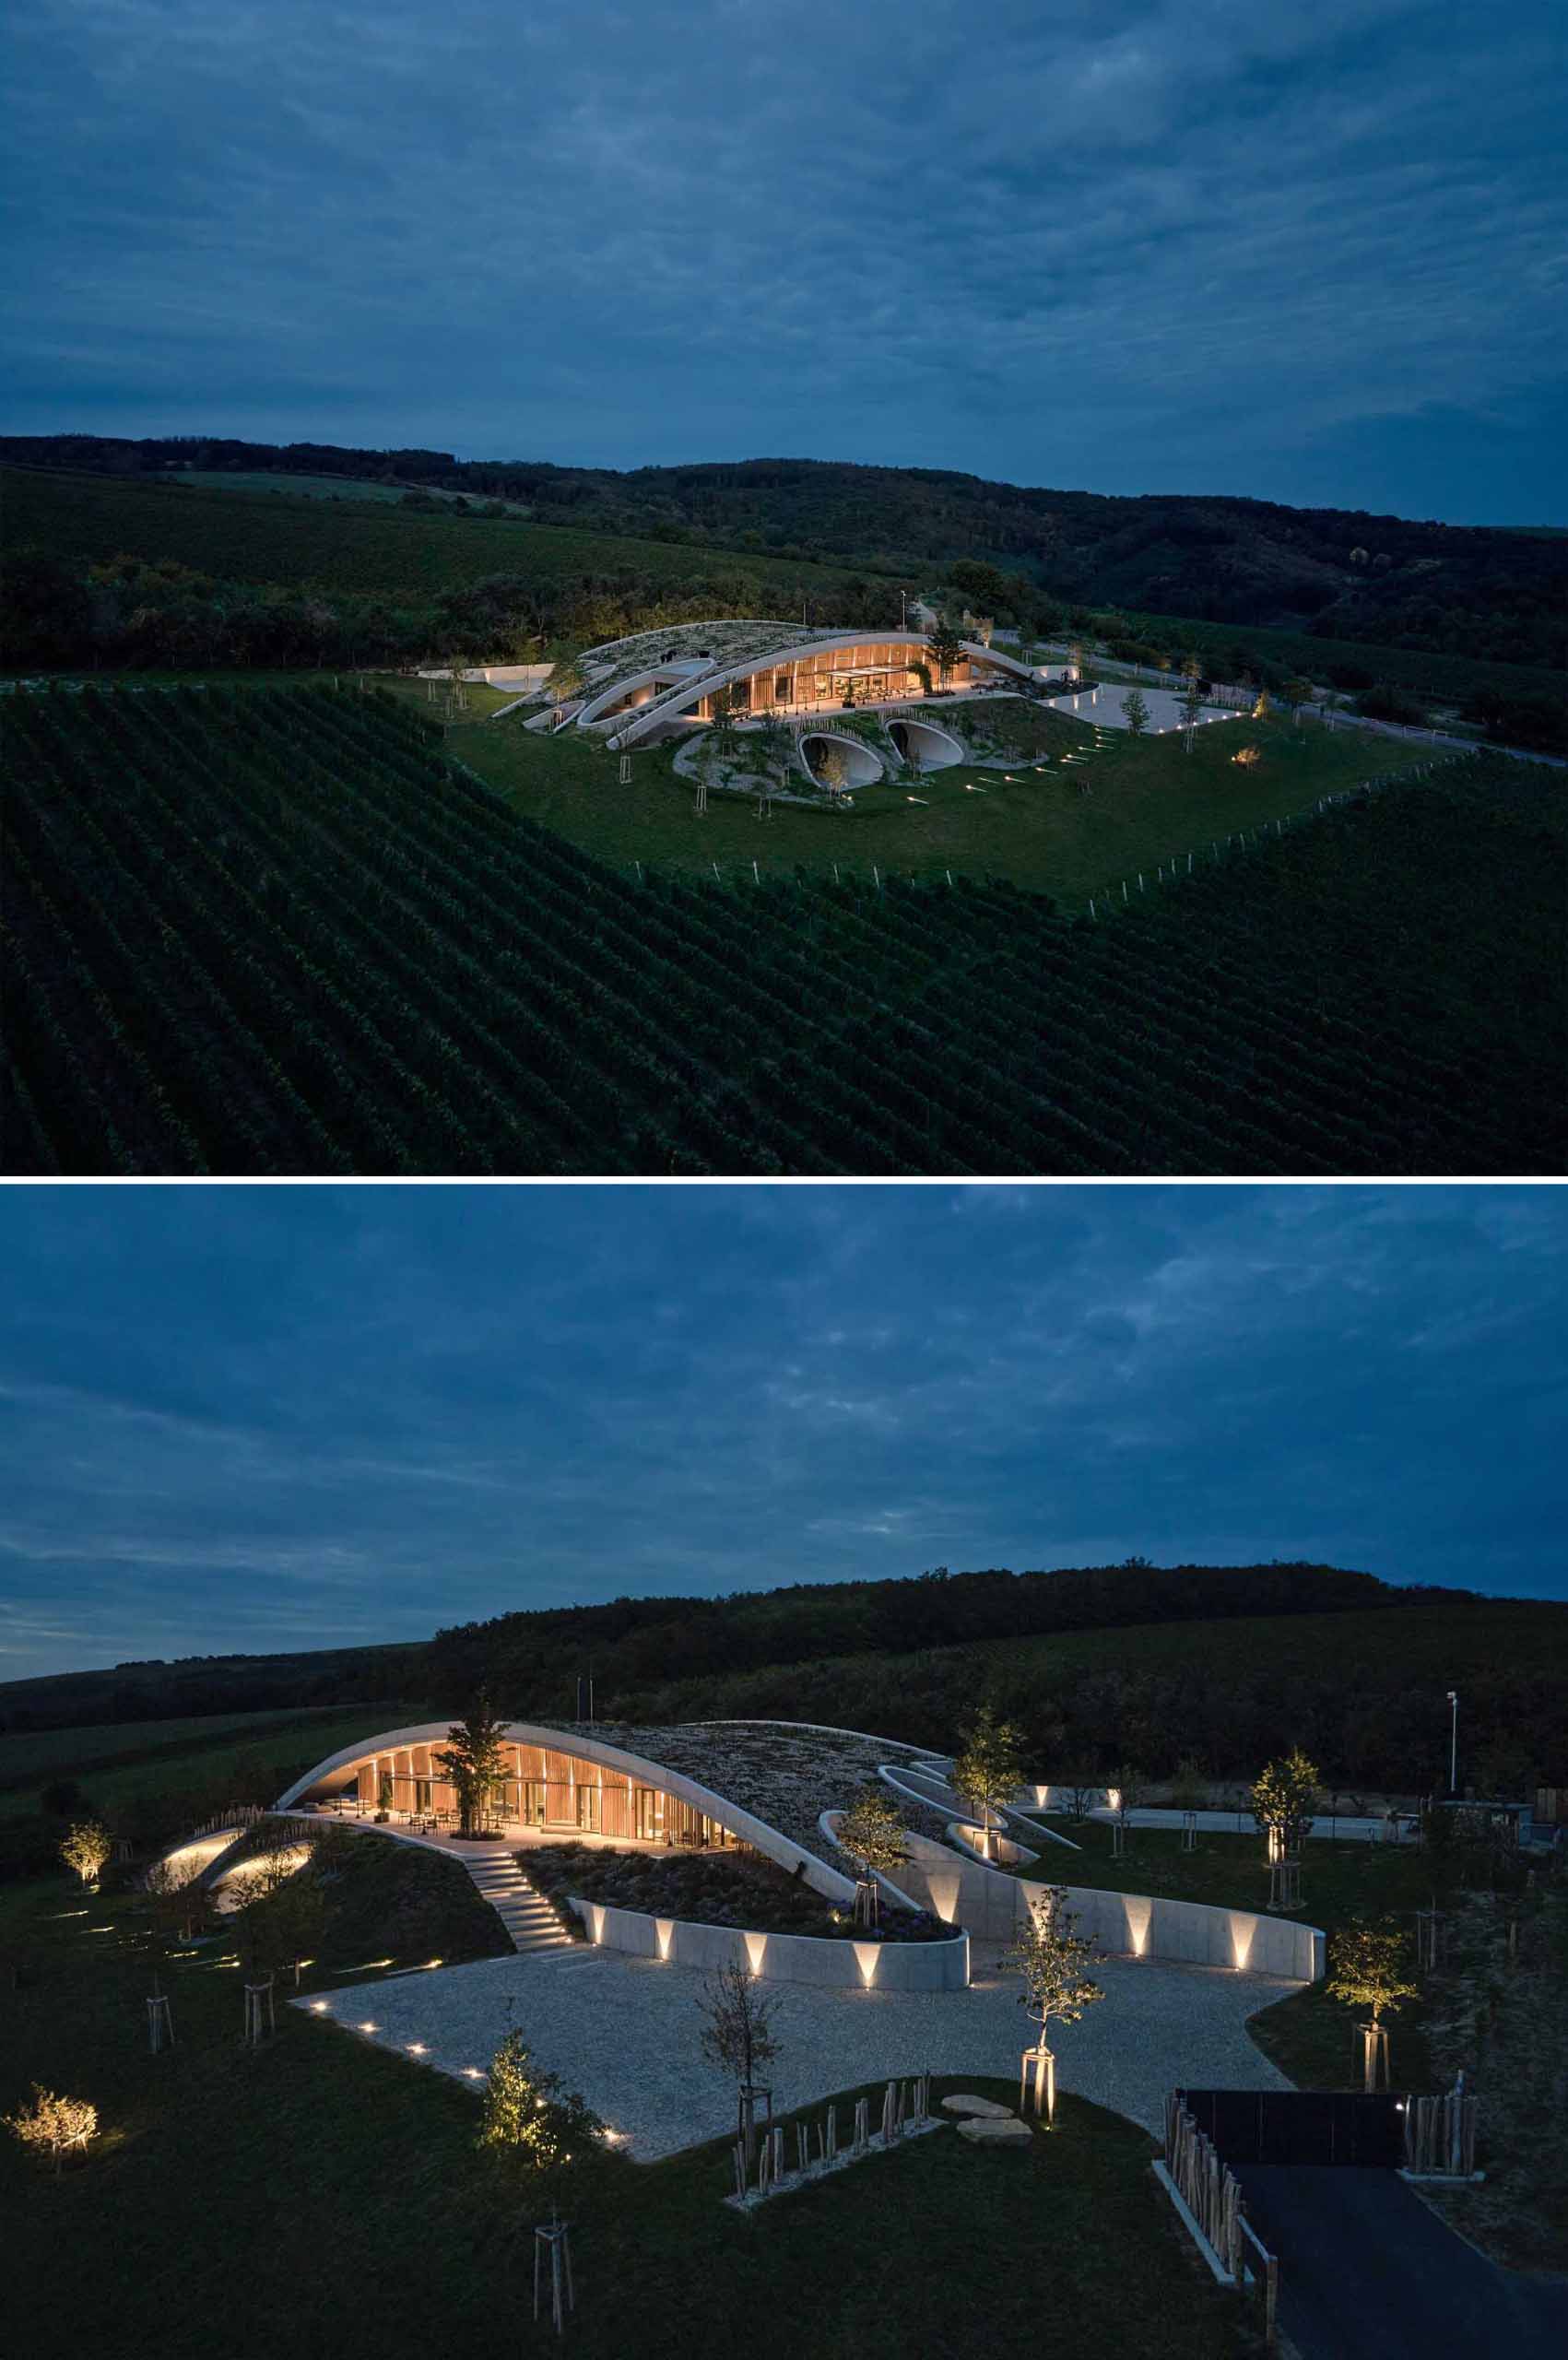 یک کارخانه شراب سازی مدرن دارای نورپردازی بیرونی است که در منظره شب می درخشد.